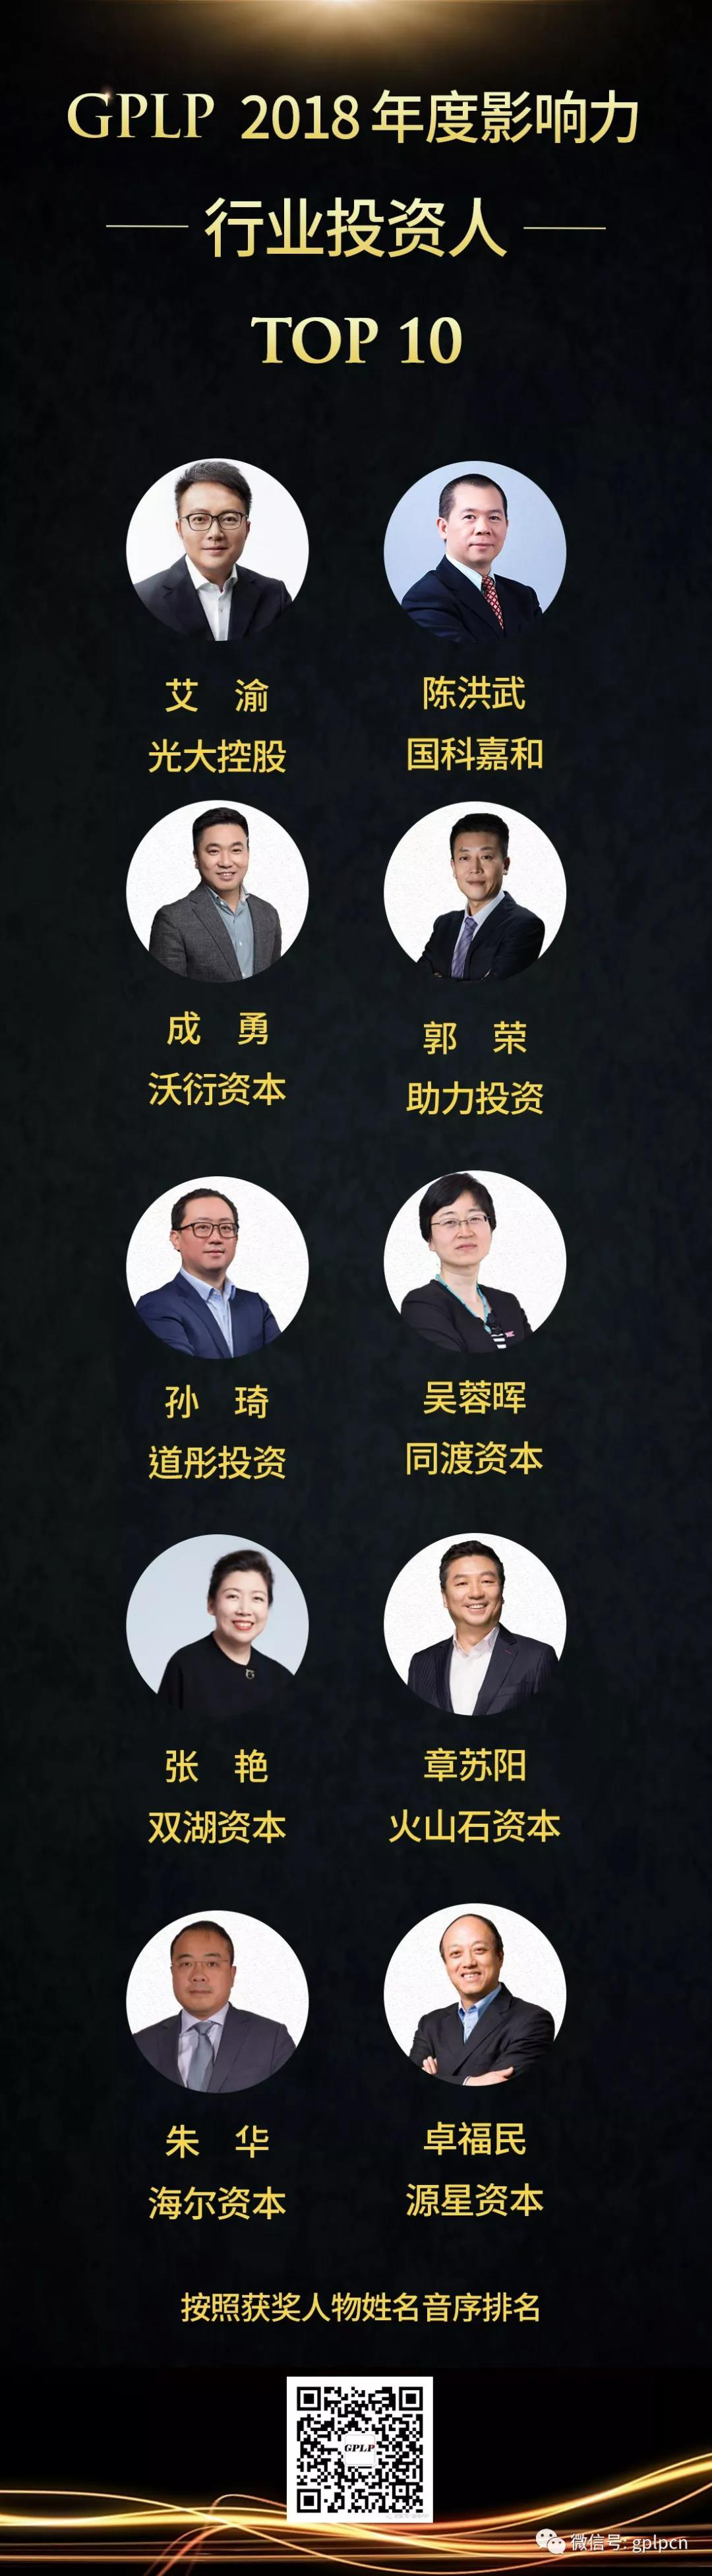 第三届 GPLP投资产业峰会暨2018影响力评选颁奖盛典成功举办 中国金融观察网www.chinaesm.com